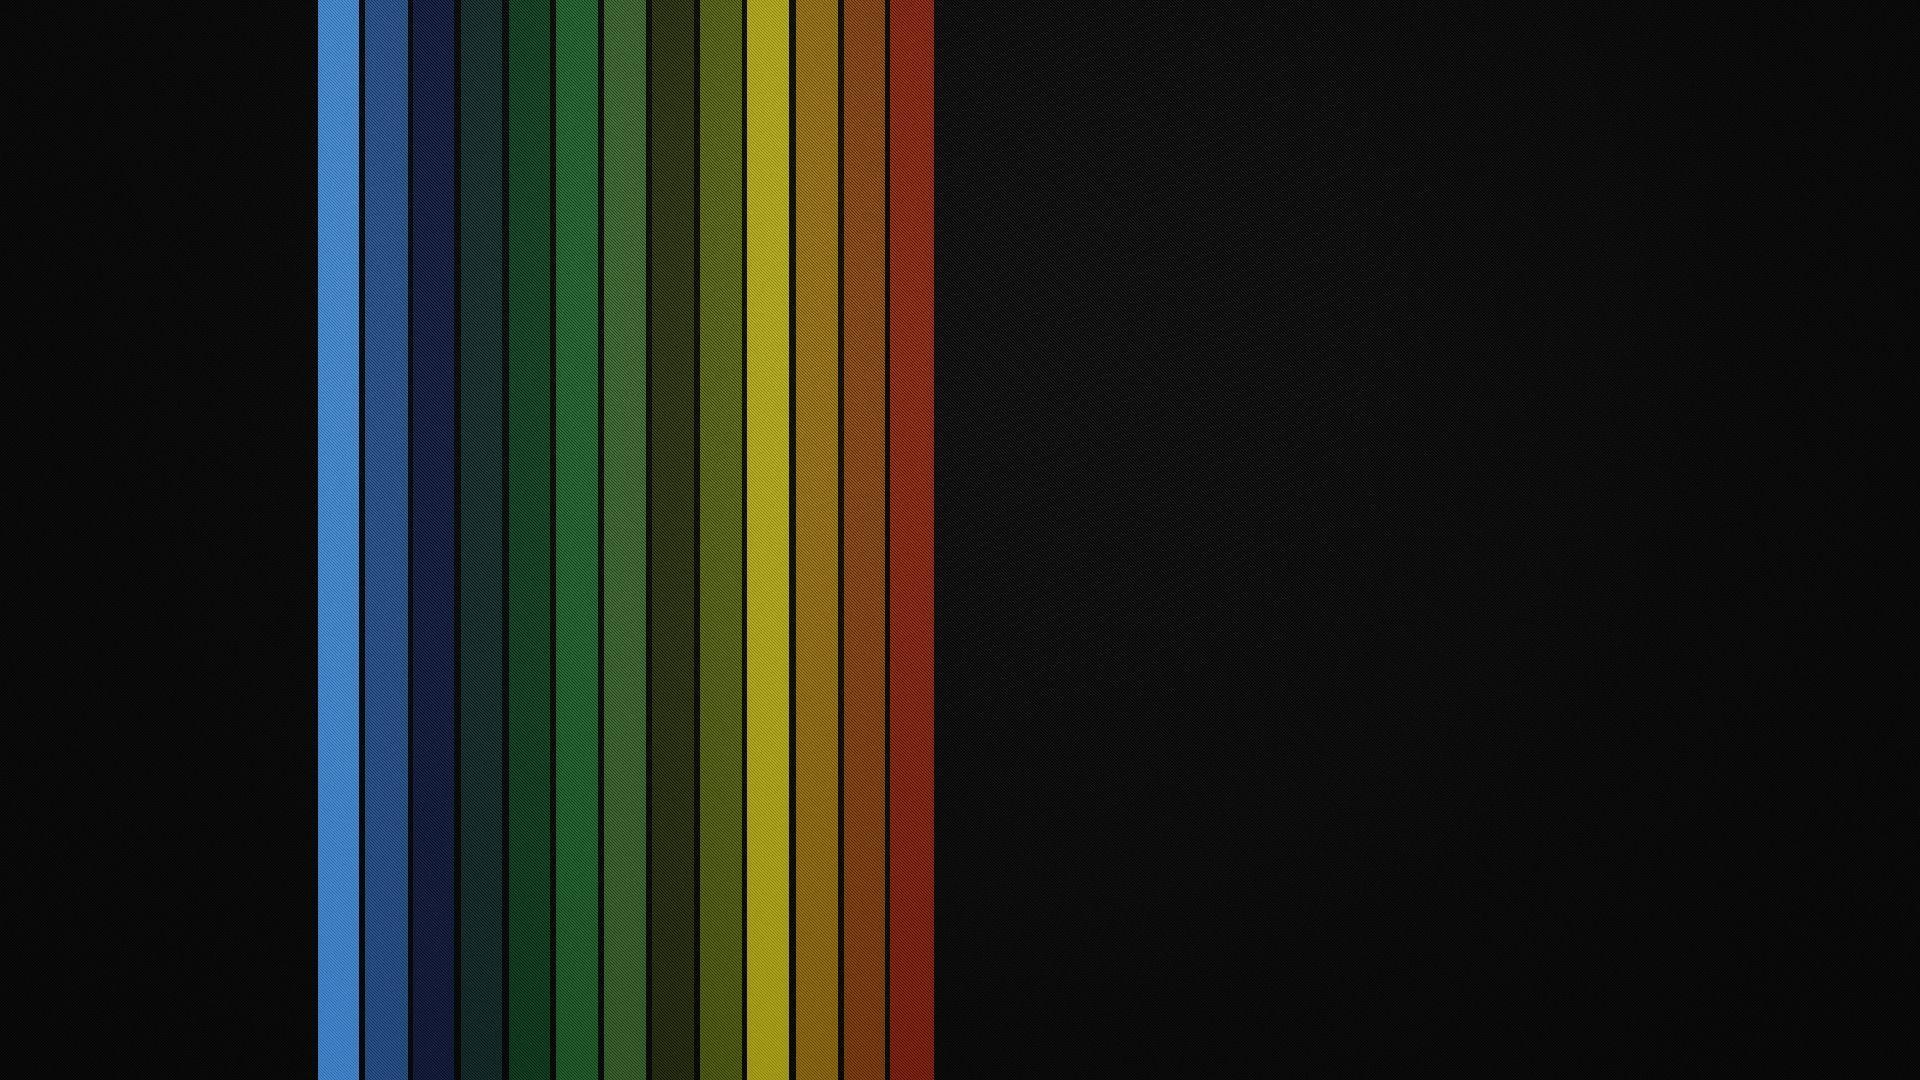 minimalistic, rainbows, lines, simple, black background, stripes